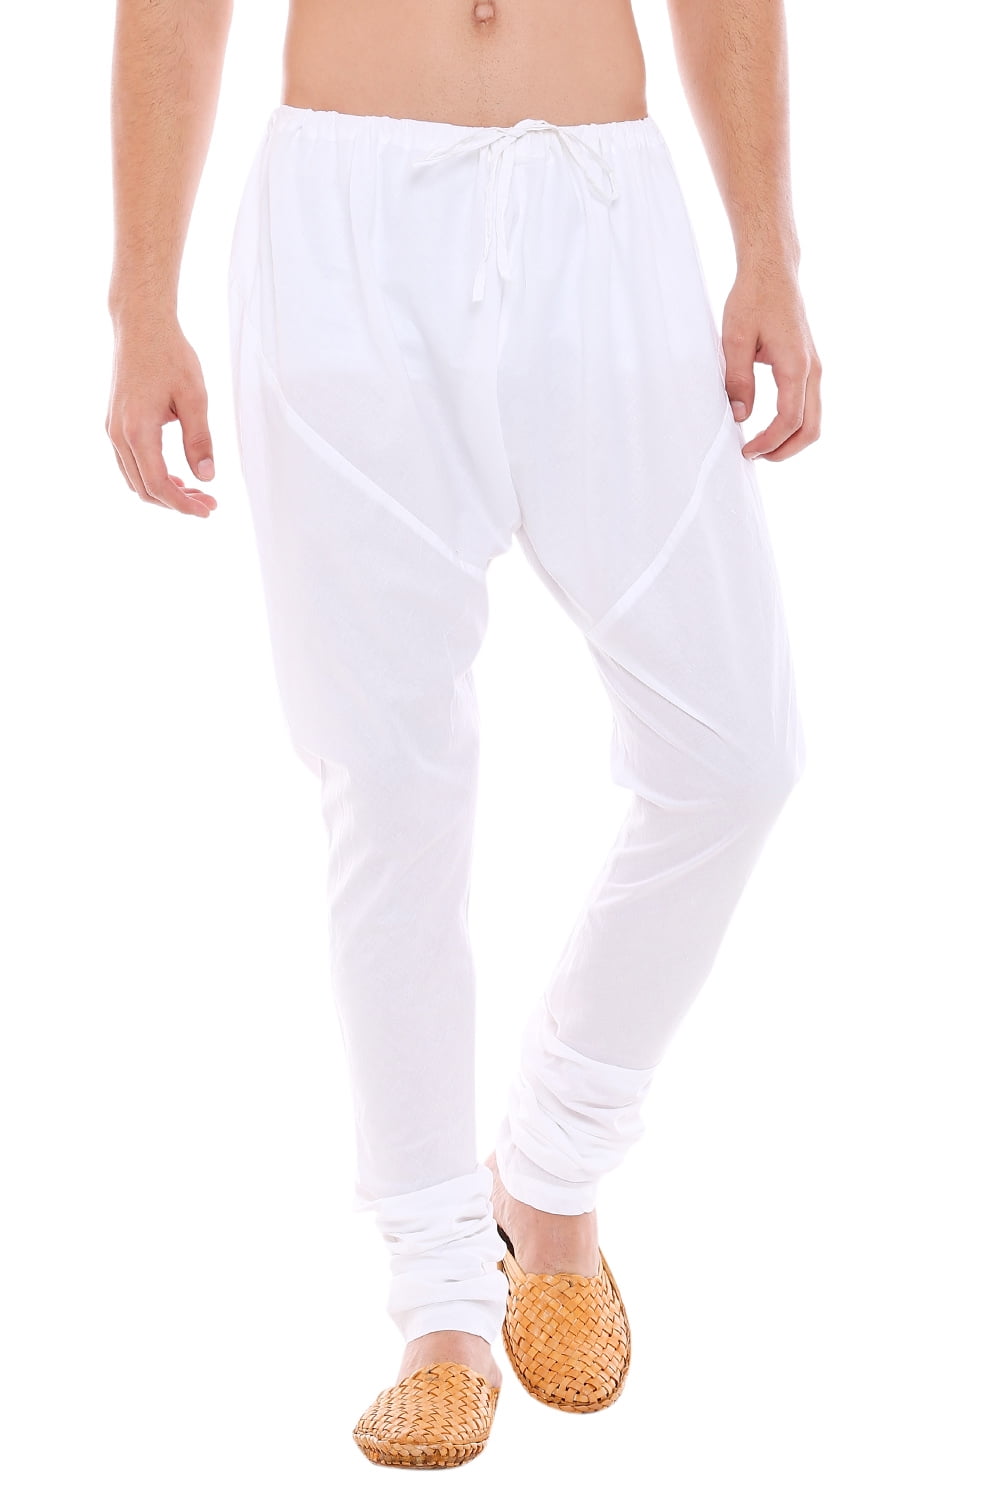 Sethukrishna Buy Men's Cotton Dhoti Pant Sets Online India | Ubuy